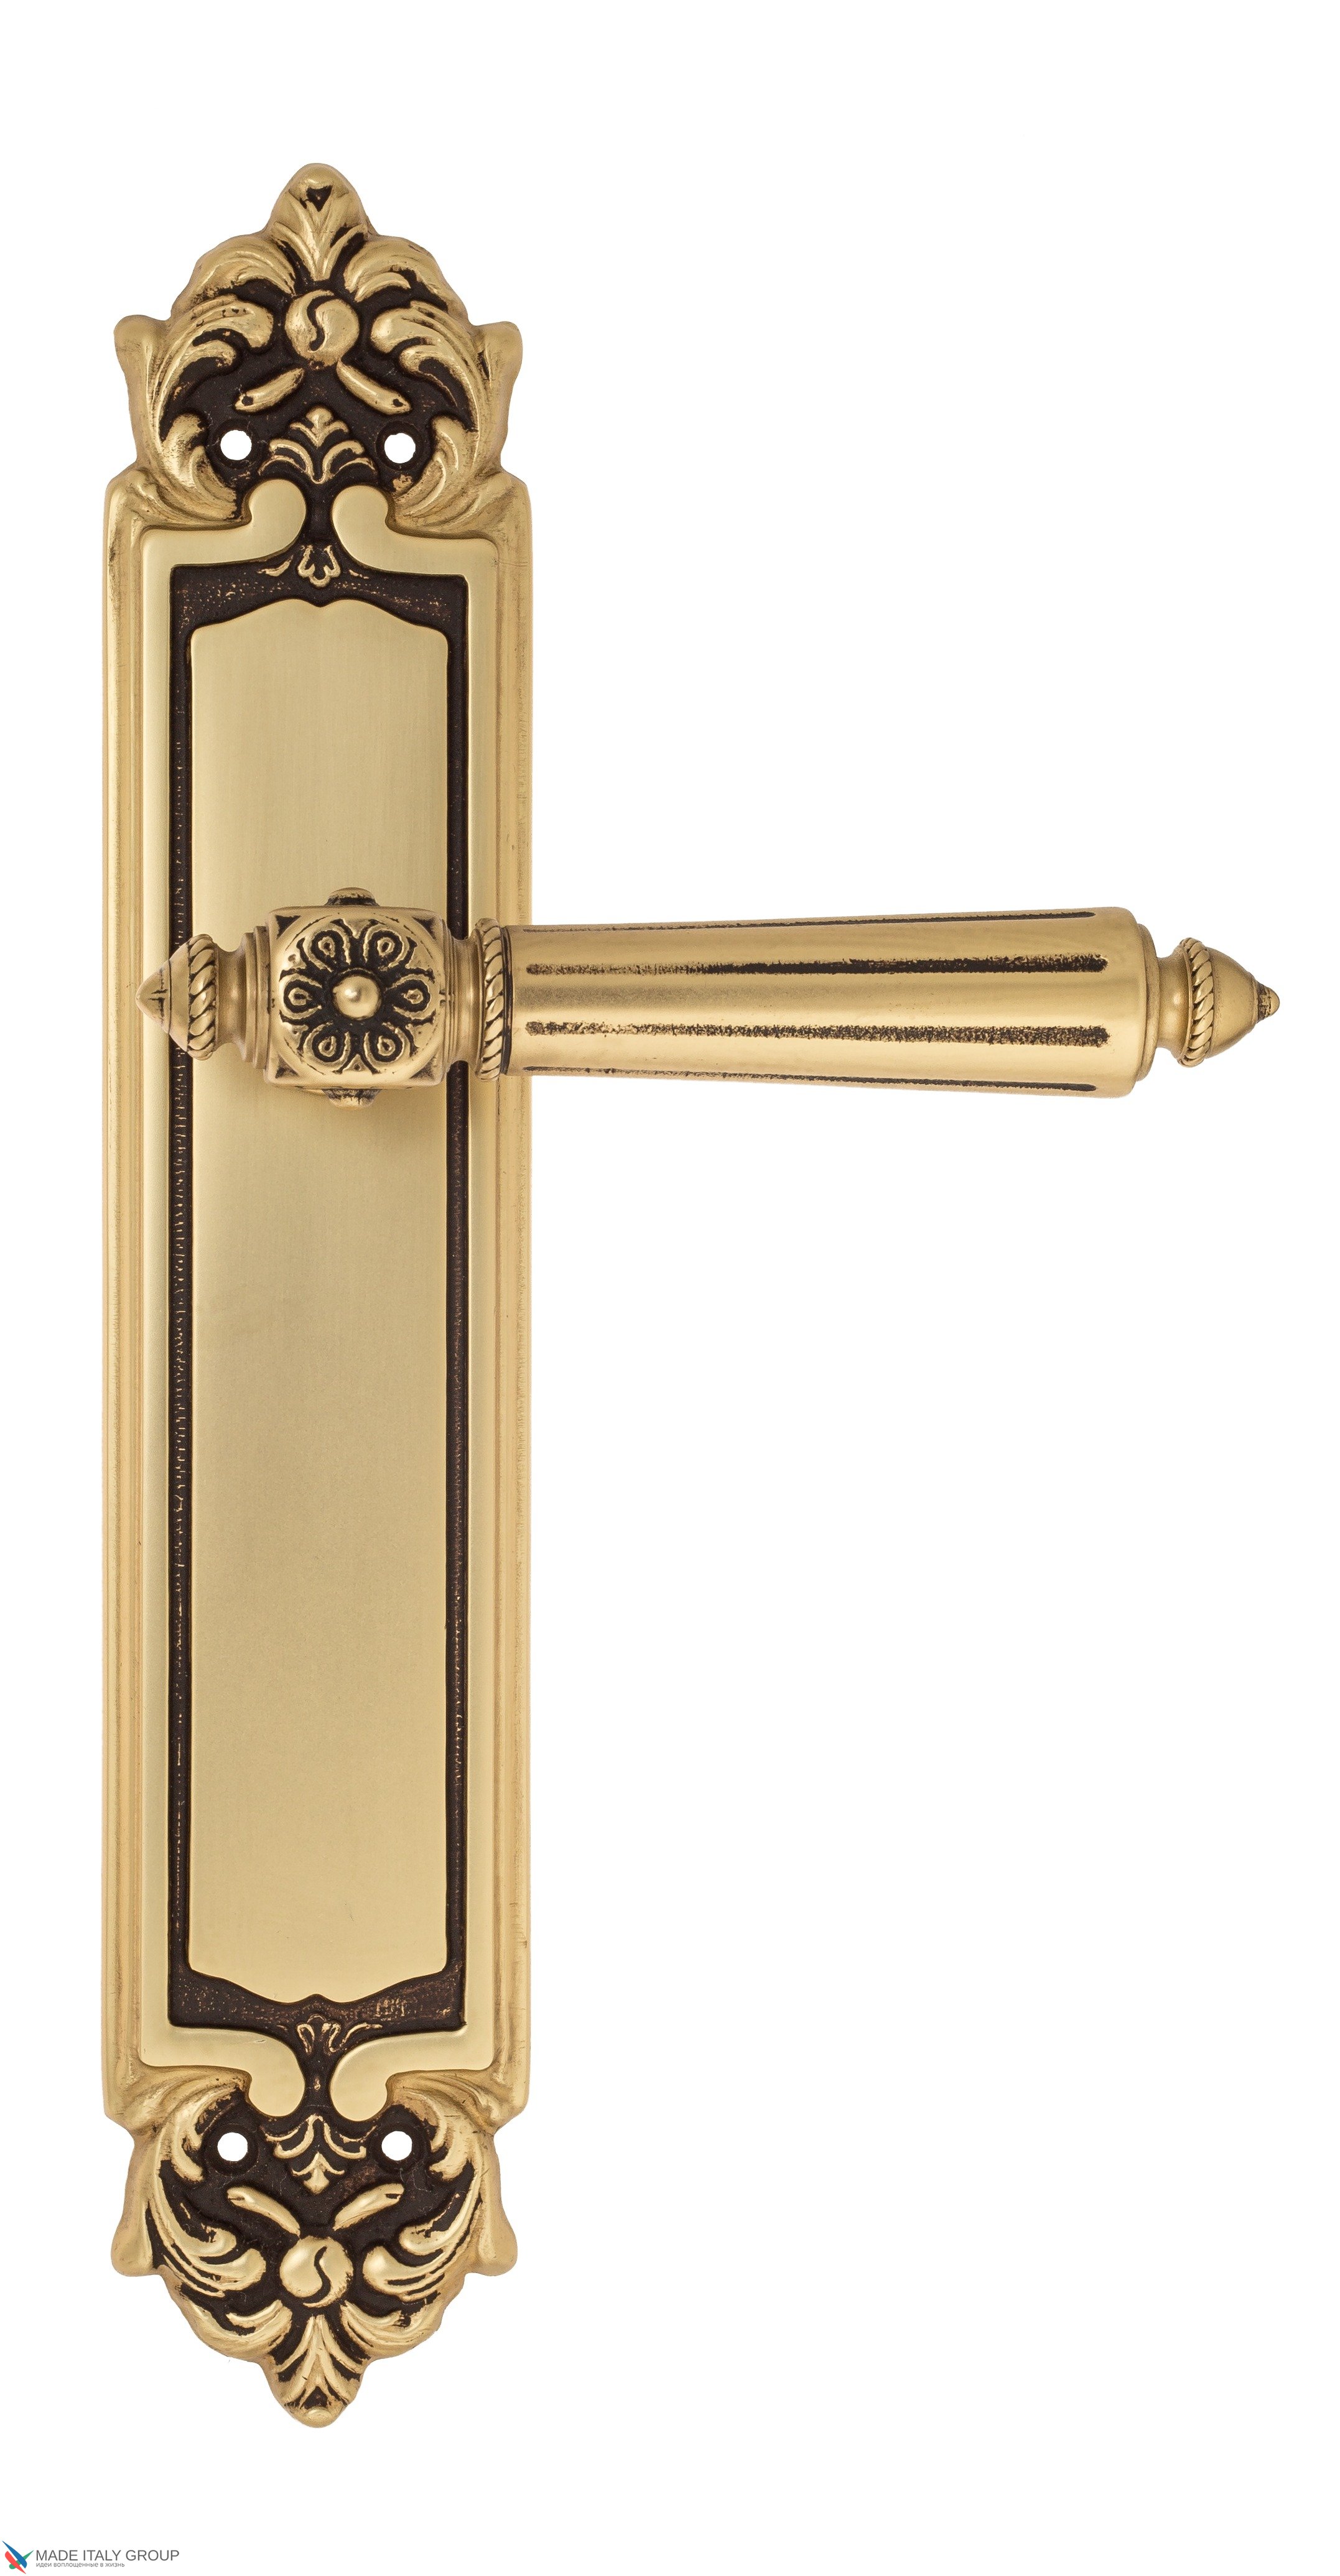 Дверная ручка Venezia "CASTELLO" на планке PL96 французское золото + коричневый